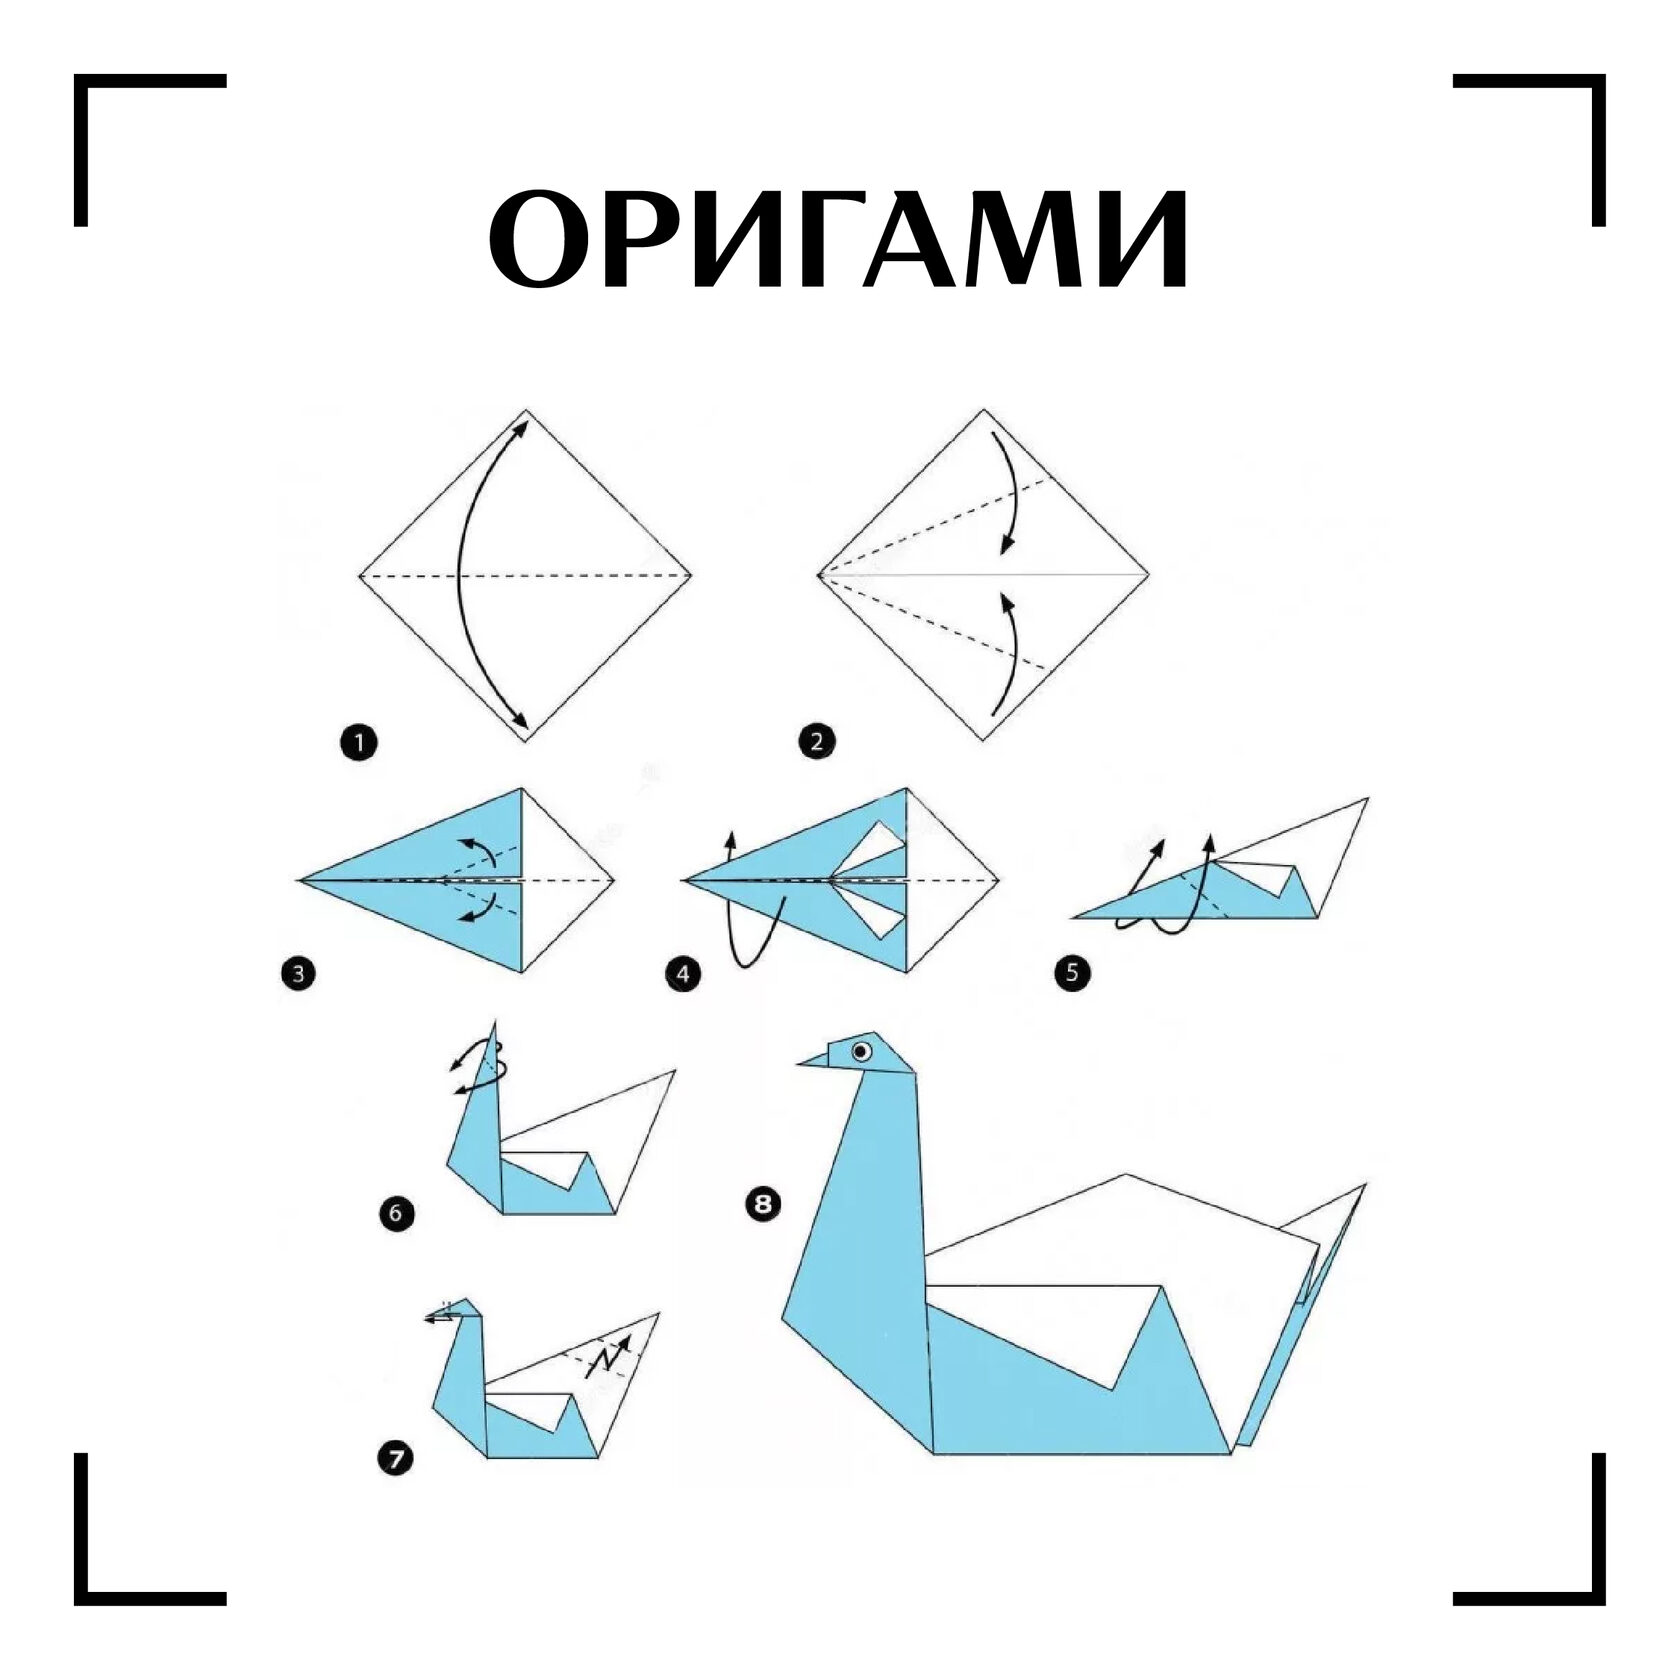 Лебедь из бумаги пошаговые. Оригами лебедь схема. Оригами птичка схема лебедь. Как сделать лебедя из бумаги пошагово. Оригами лебедь пошагово для детей.